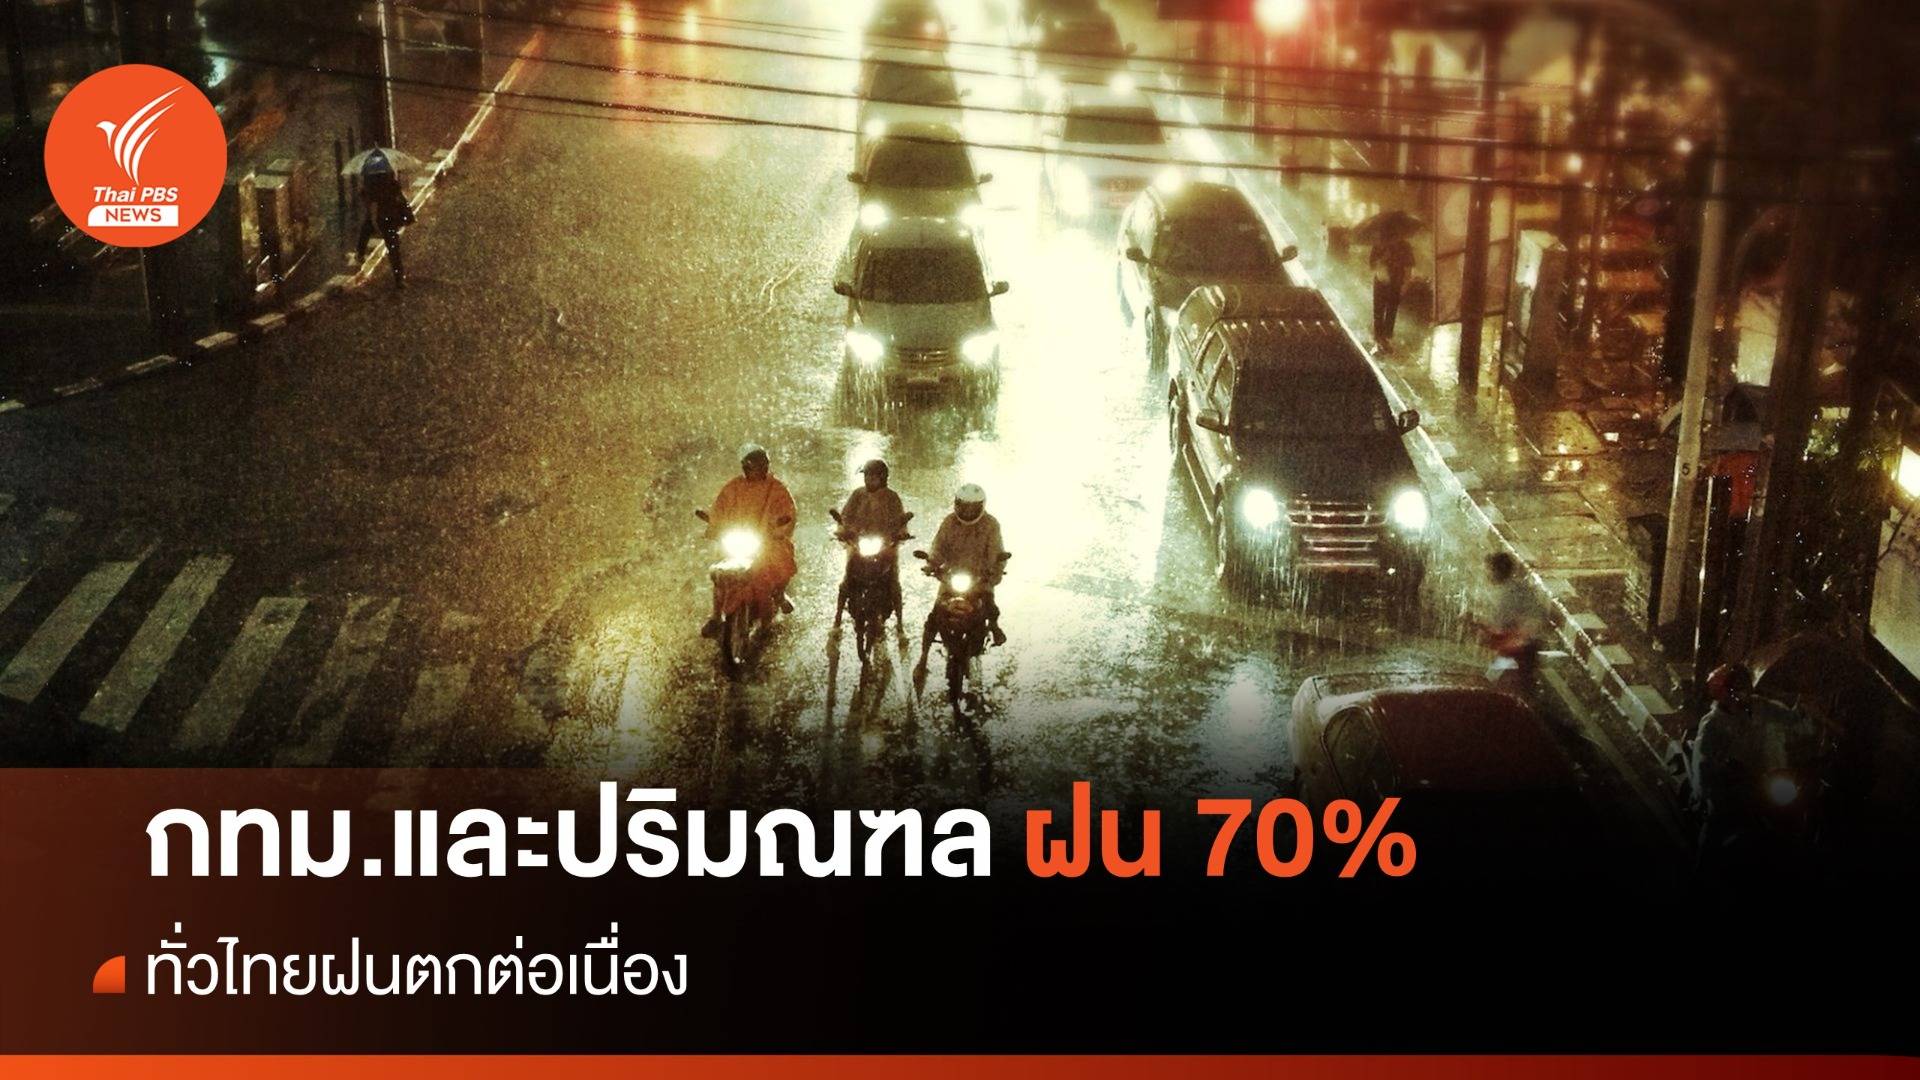 สภาพอากาศวันนี้ ฝนตกต่อเนื่องทั่วไทย กทม.เจอฝน 70%